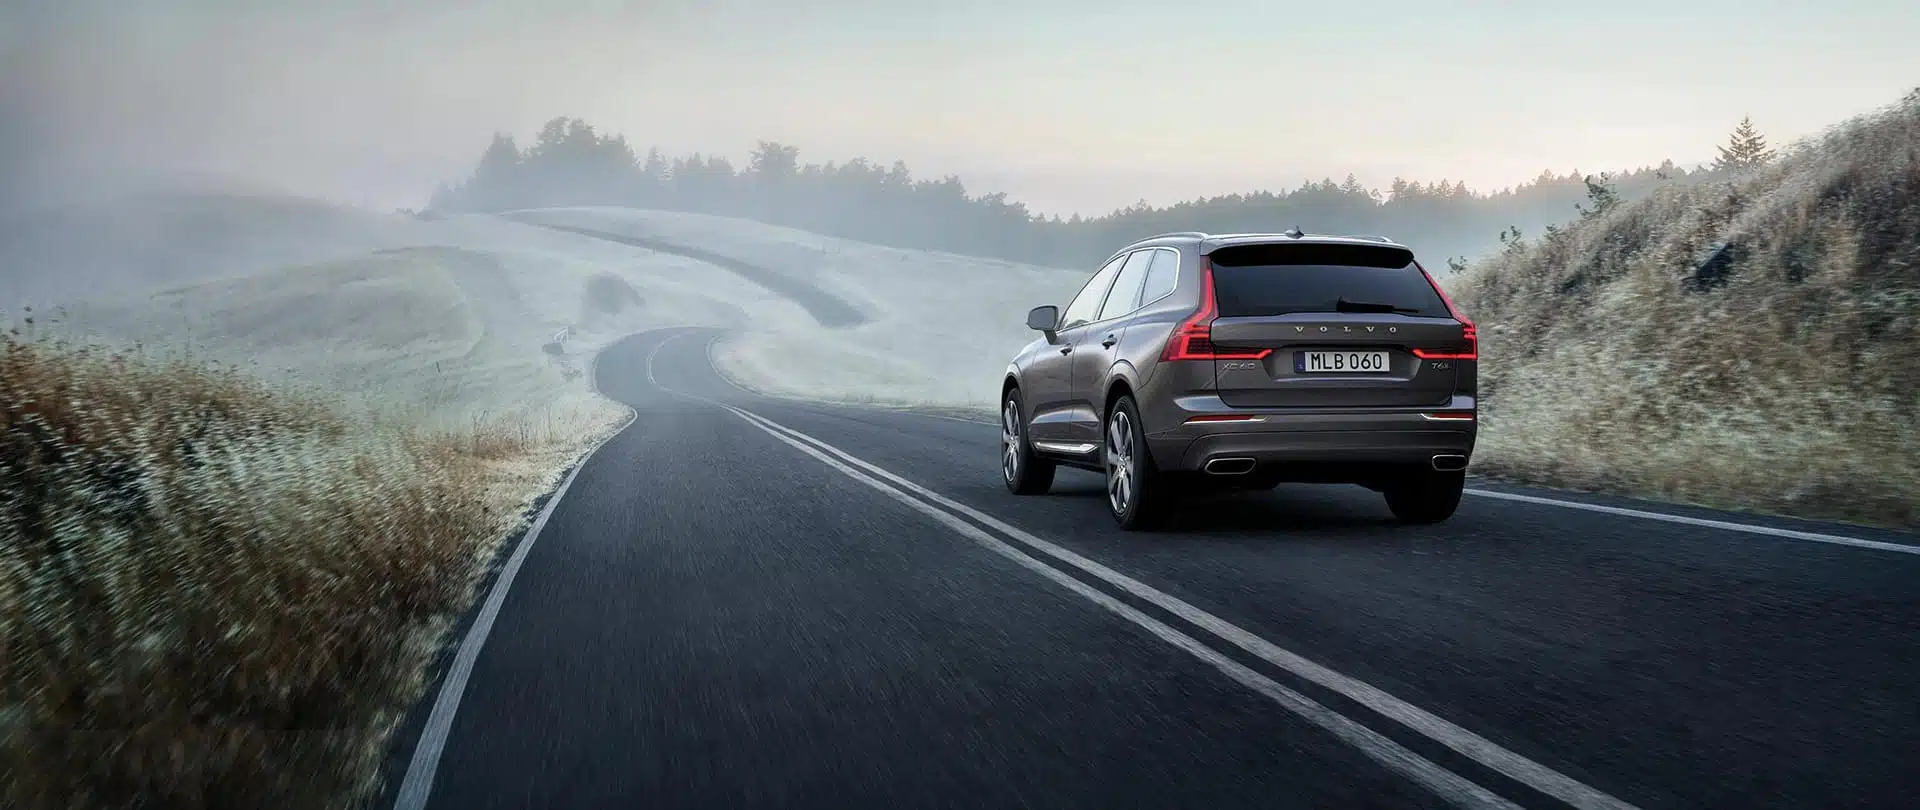 Mörkgrön Volvo XC60 Recharge körandes på dimmig landsväg